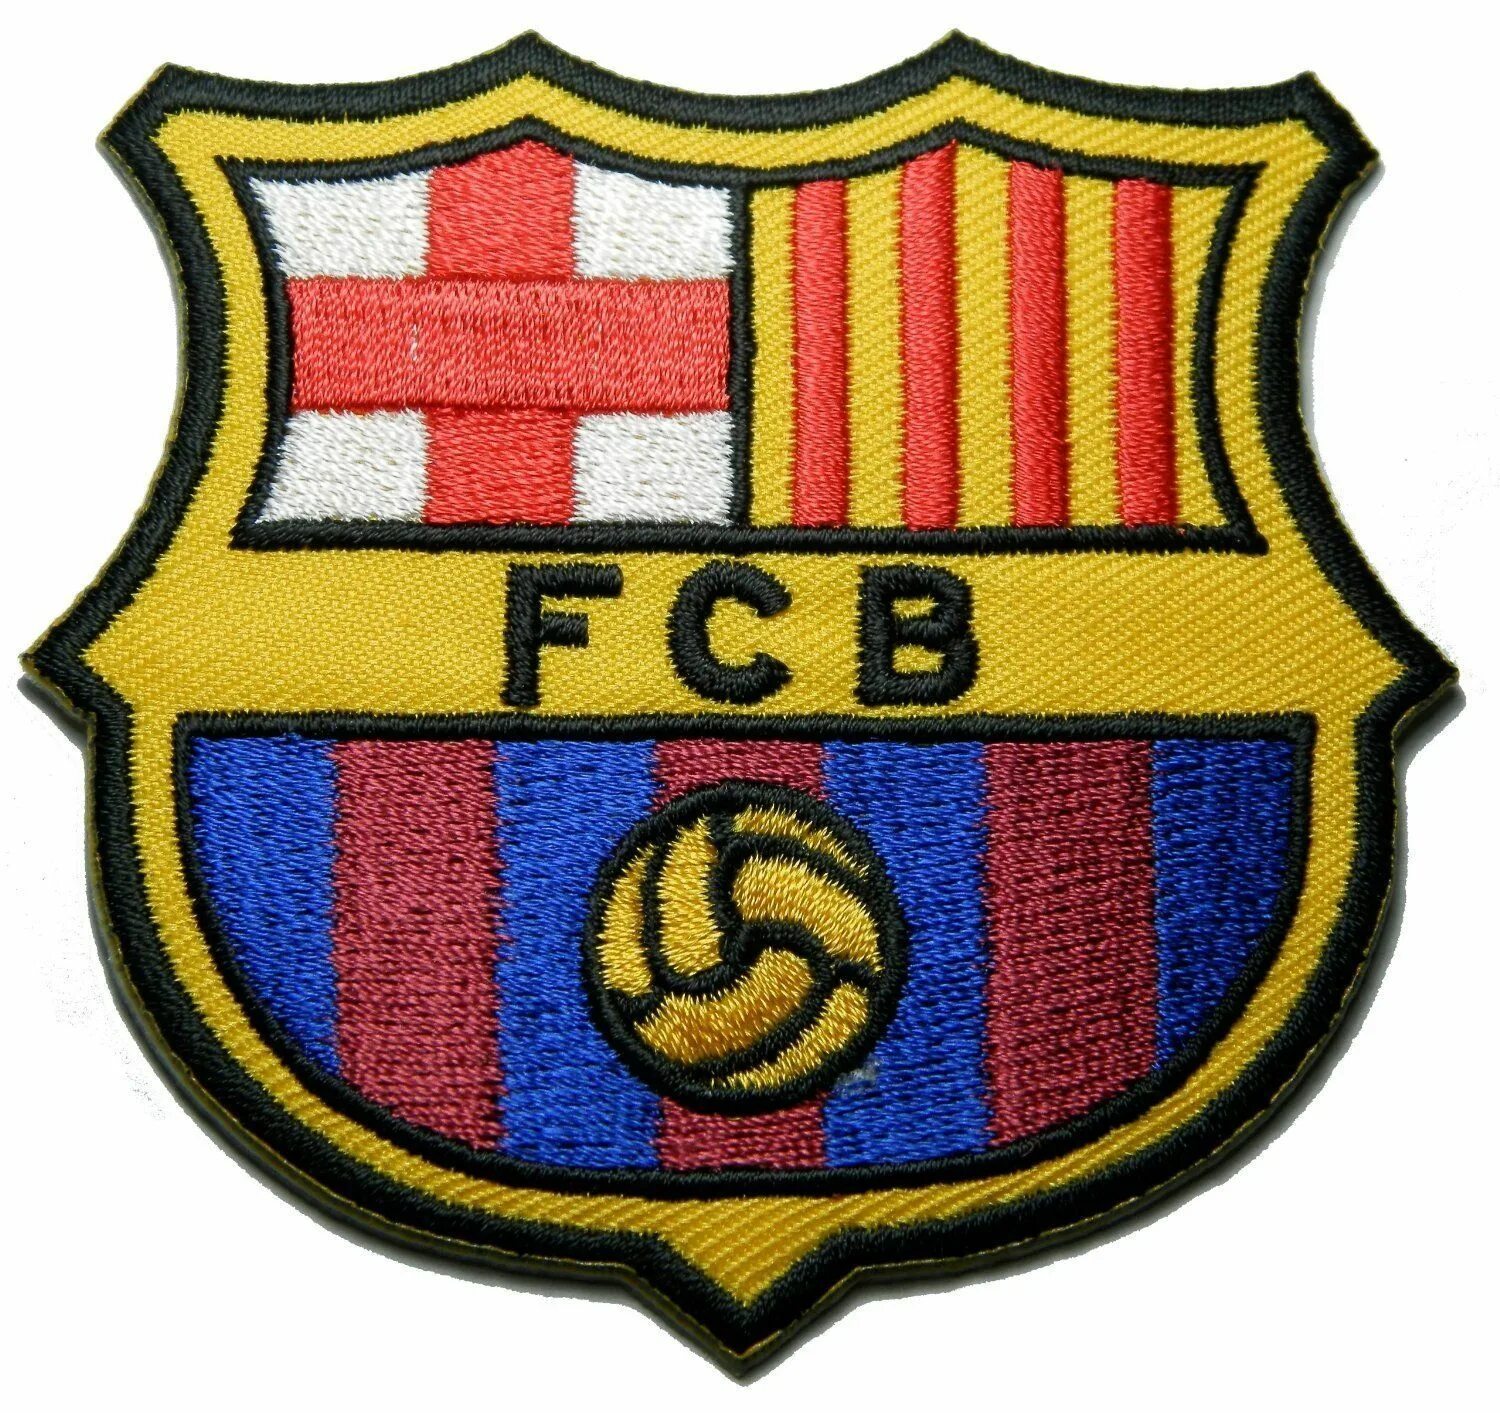 Барселона герб футбольного клуба. Барселона футбольный клуб лого. Лого футбольной команды Барселона. Барселона футбольный клуб эмблема логотип.